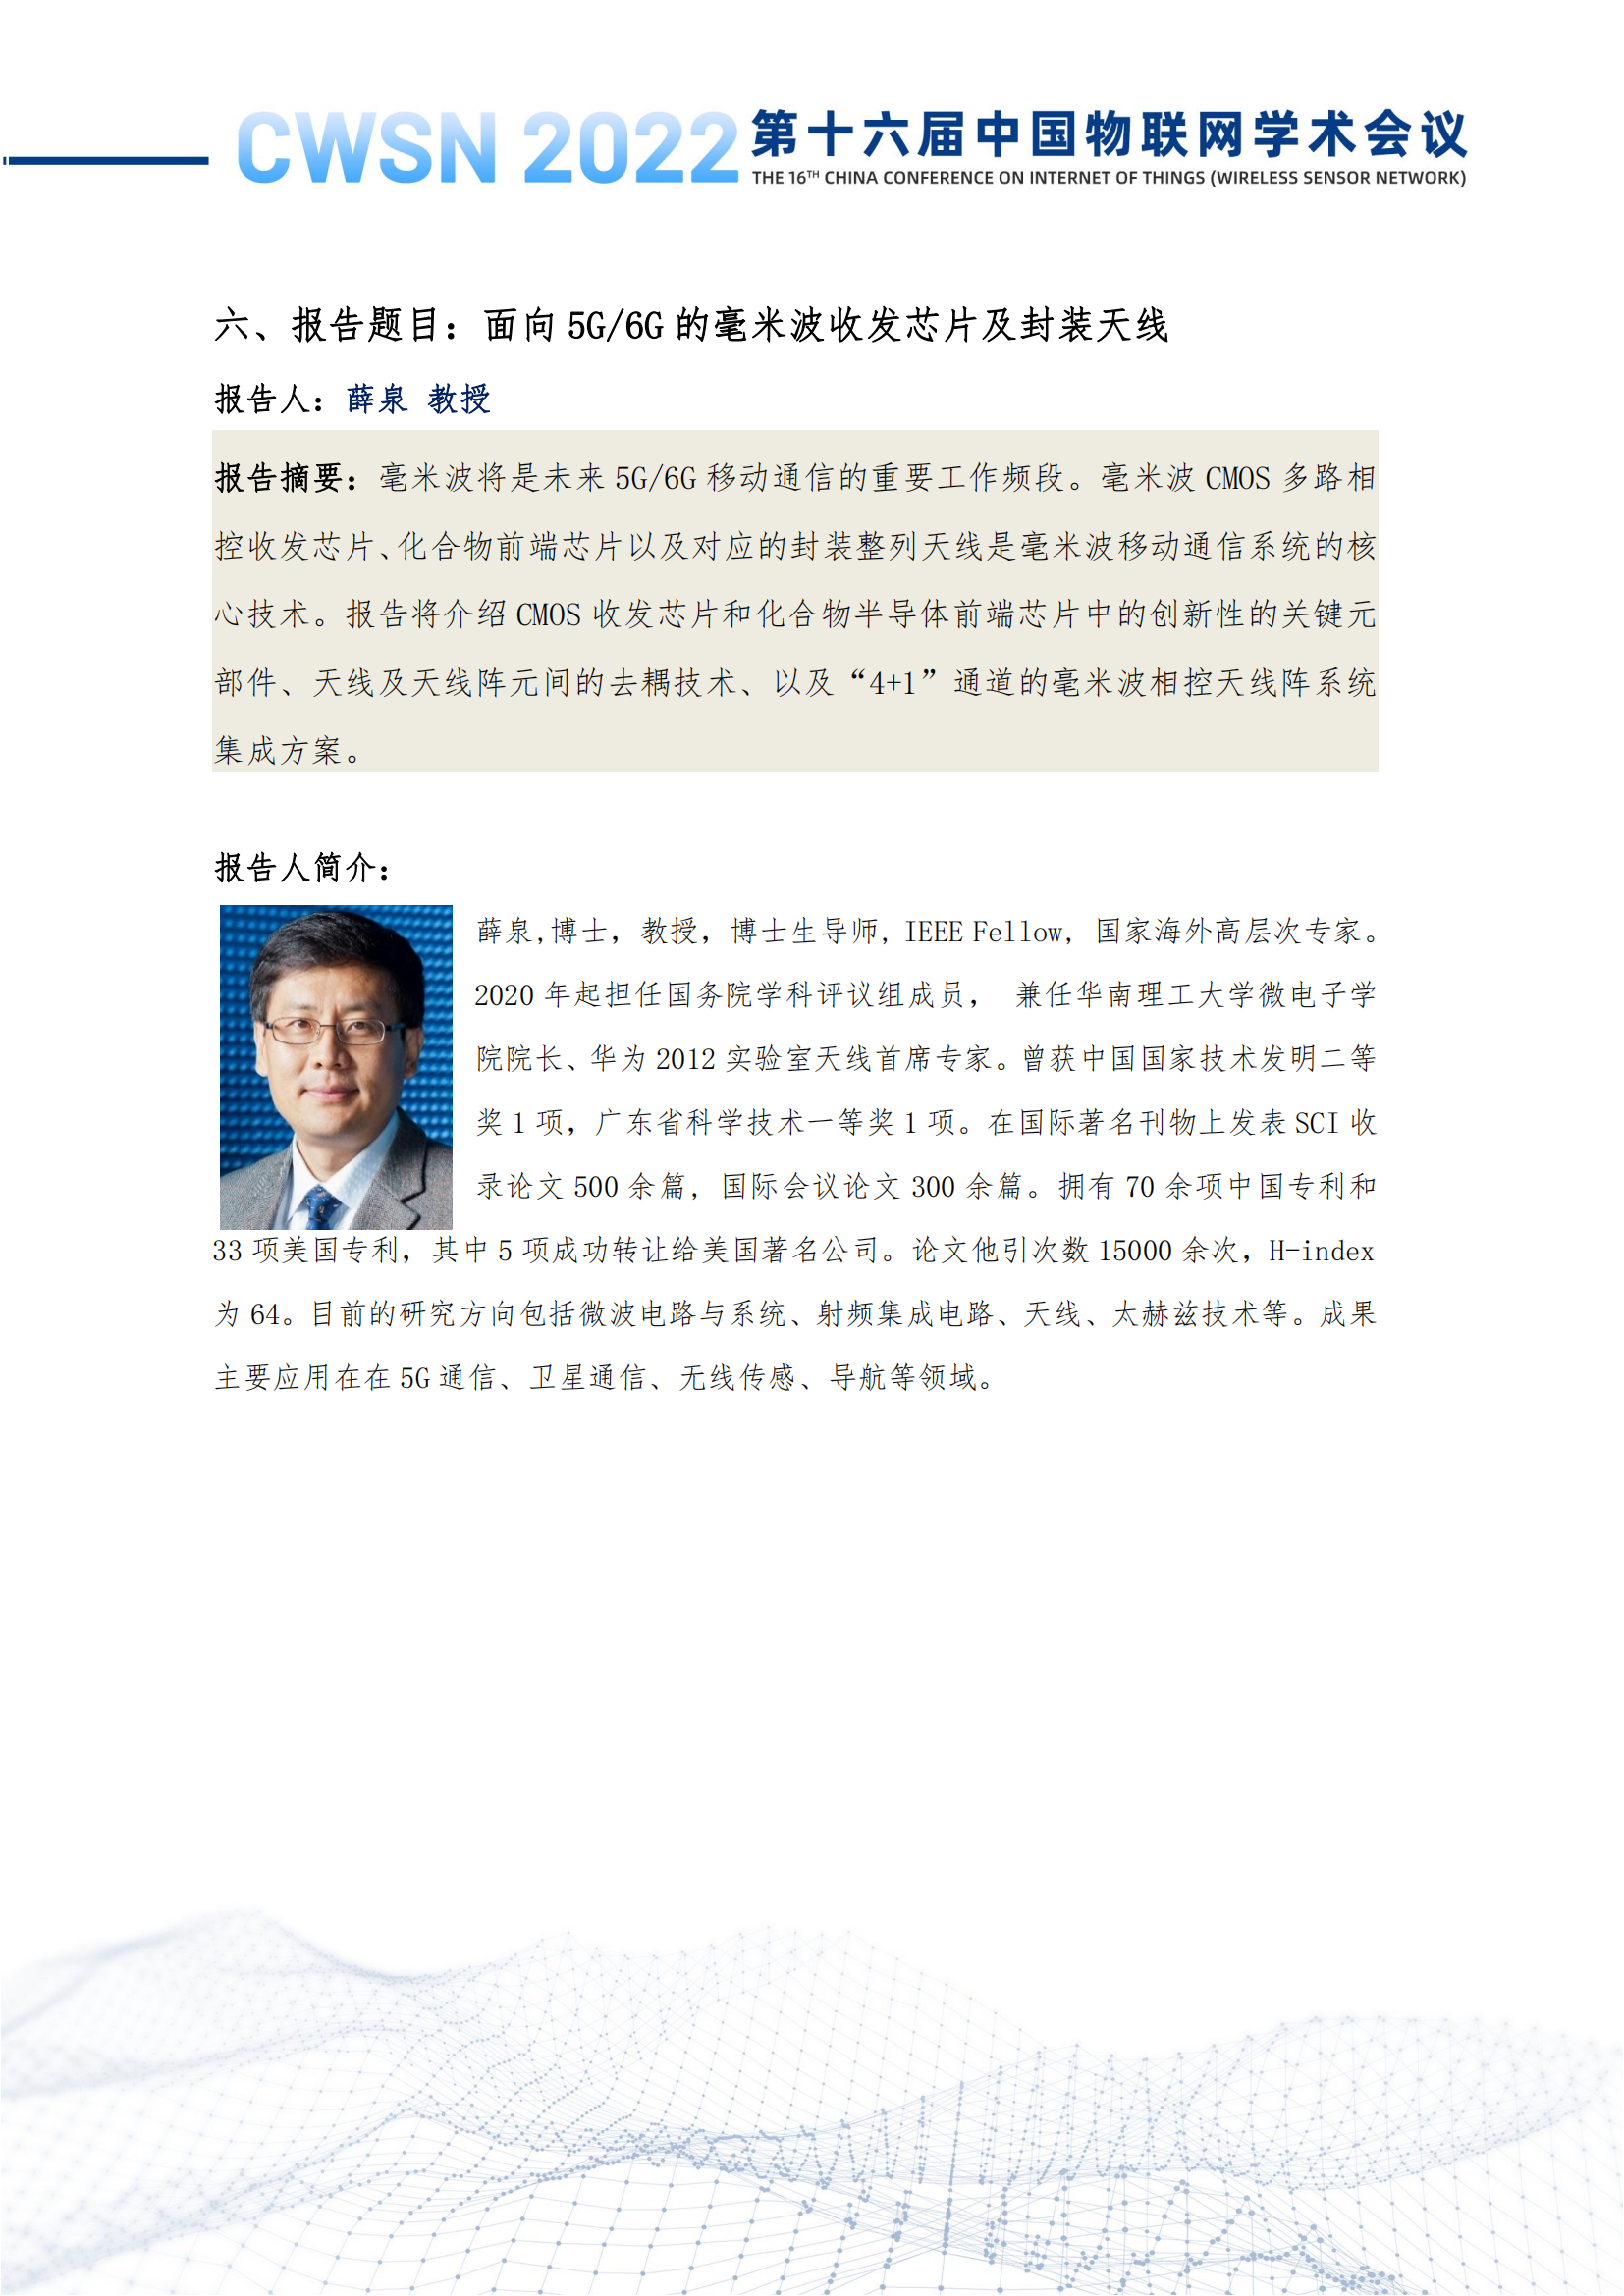 第十六届中国物联网学术会议（CWSN）会议手册-定稿_19.png